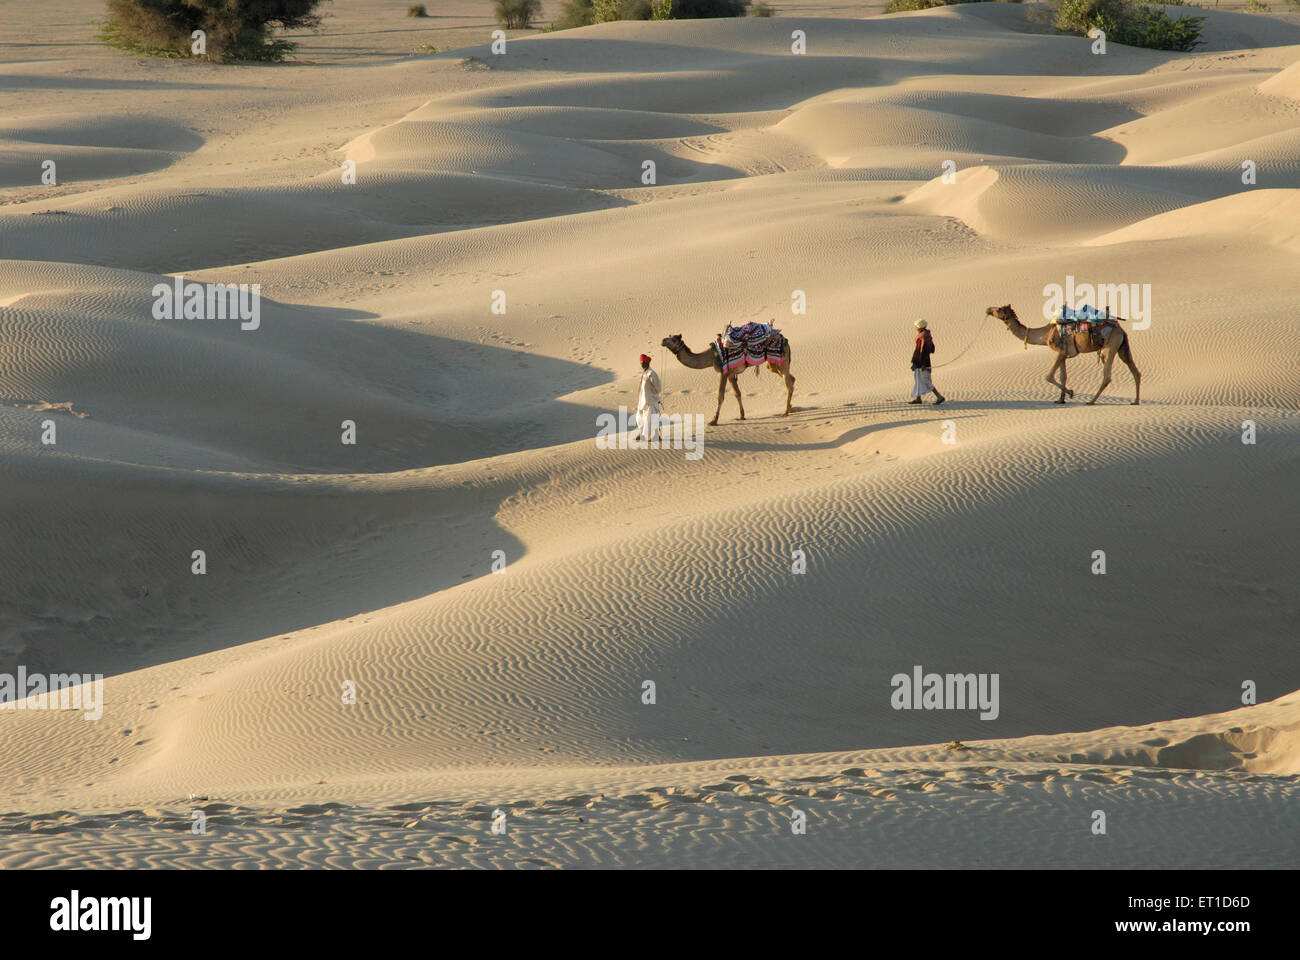 Des chameaux avec des hommes dans le désert de dunes de sable de Sam ; ; ; Inde Rajasthan Jaisalmer Banque D'Images